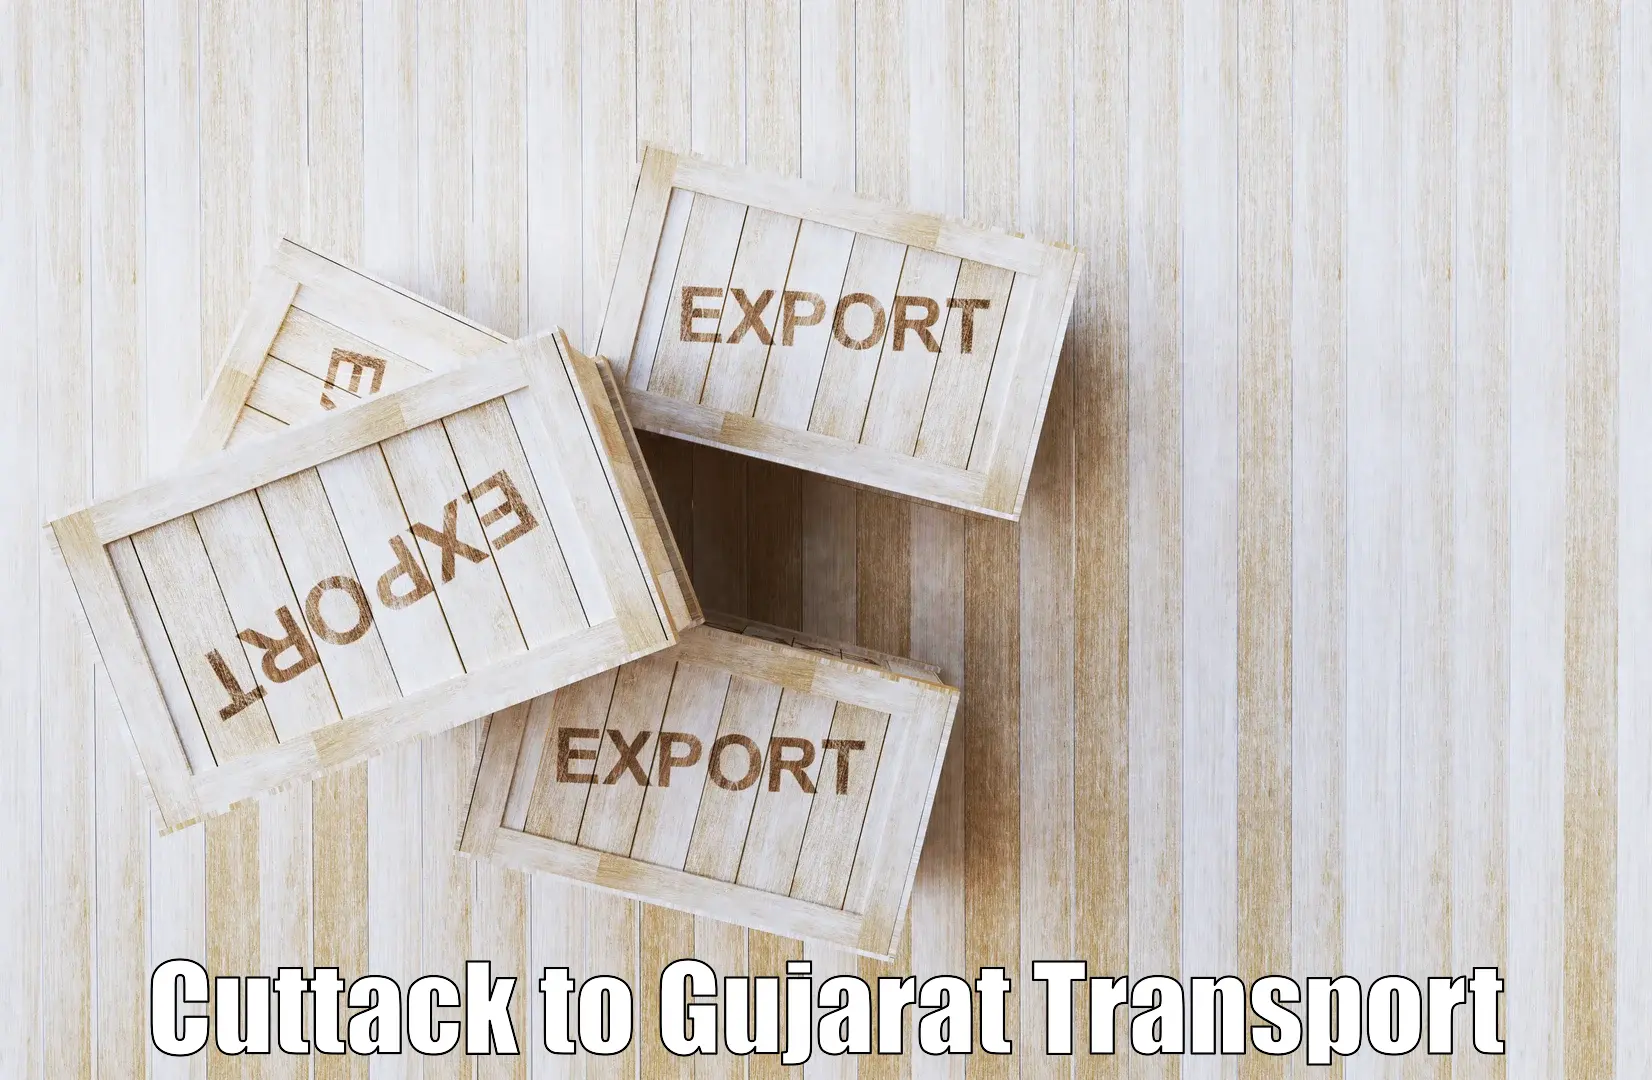 Furniture transport service Cuttack to Visavadar